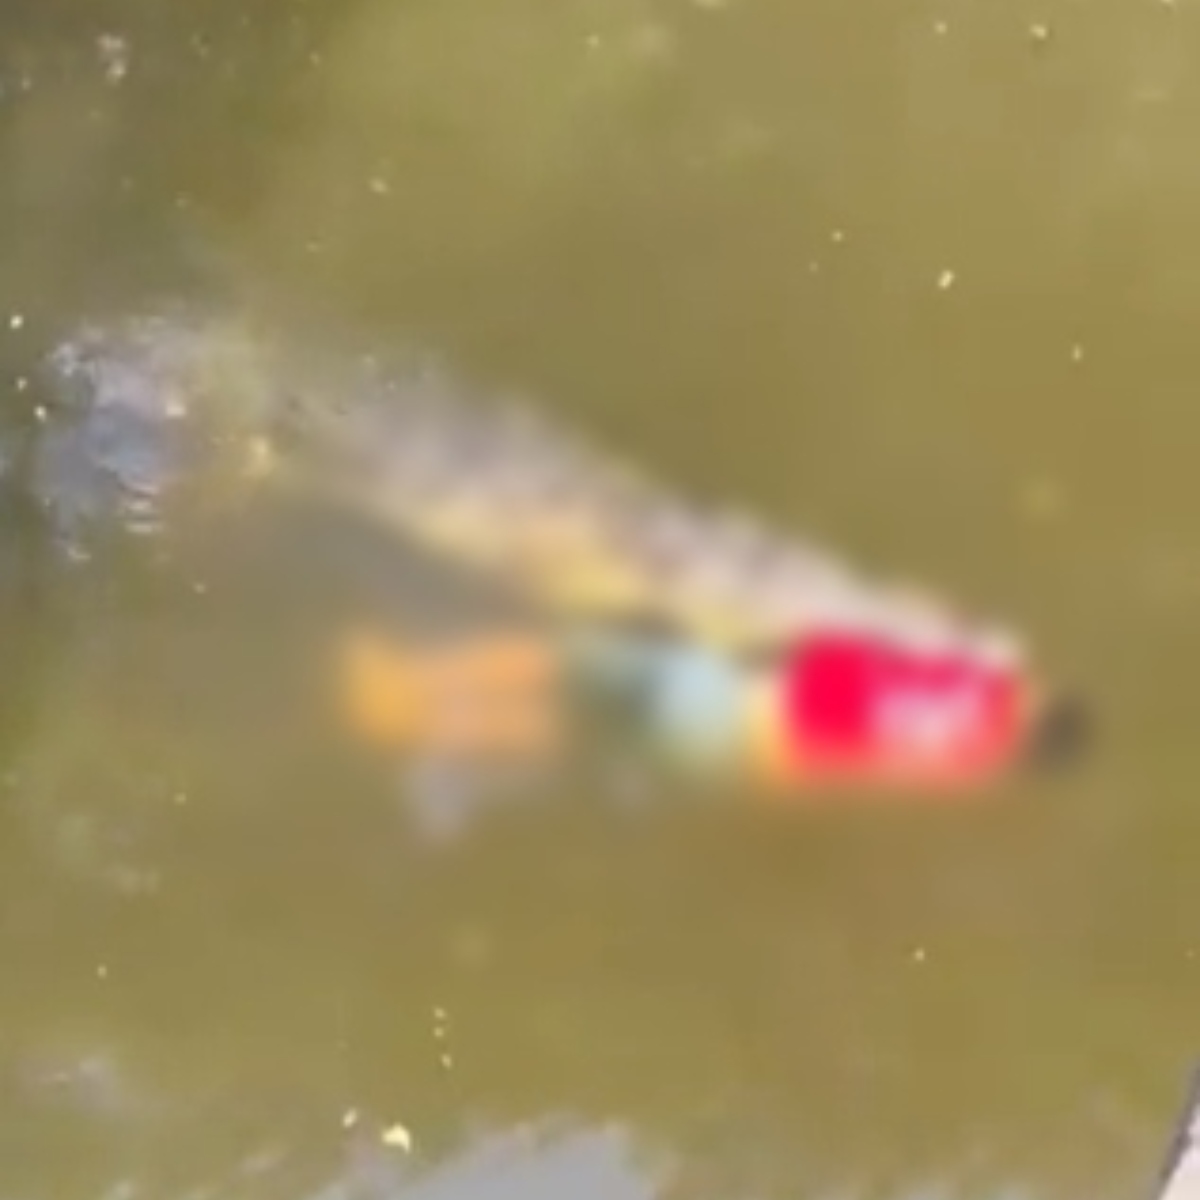  VÍDEO: Jogador de futebol morre ao ser atacado por crocodilo em rio 